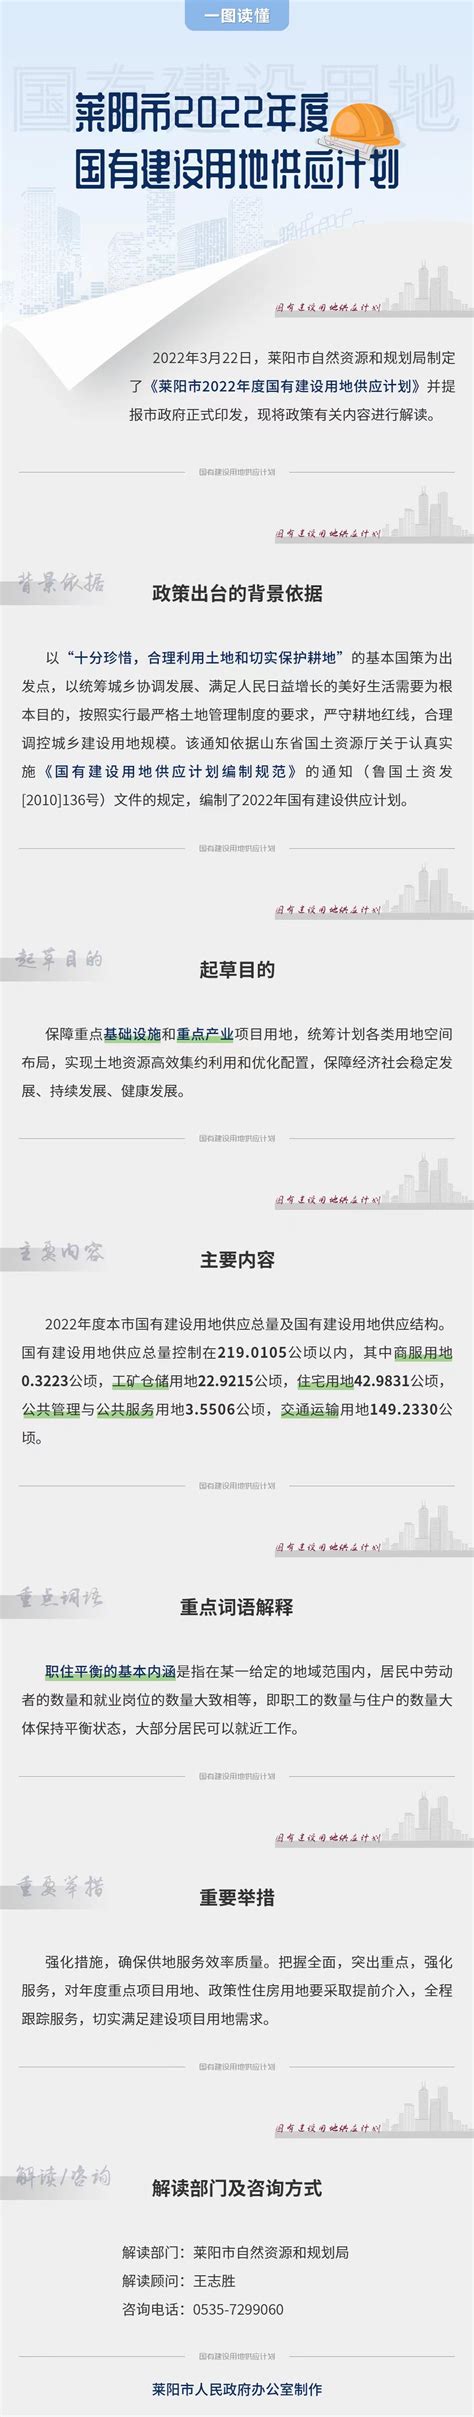 莱阳市政府门户网站 批准结果信息 保利堂悦项目规划方案批前公示